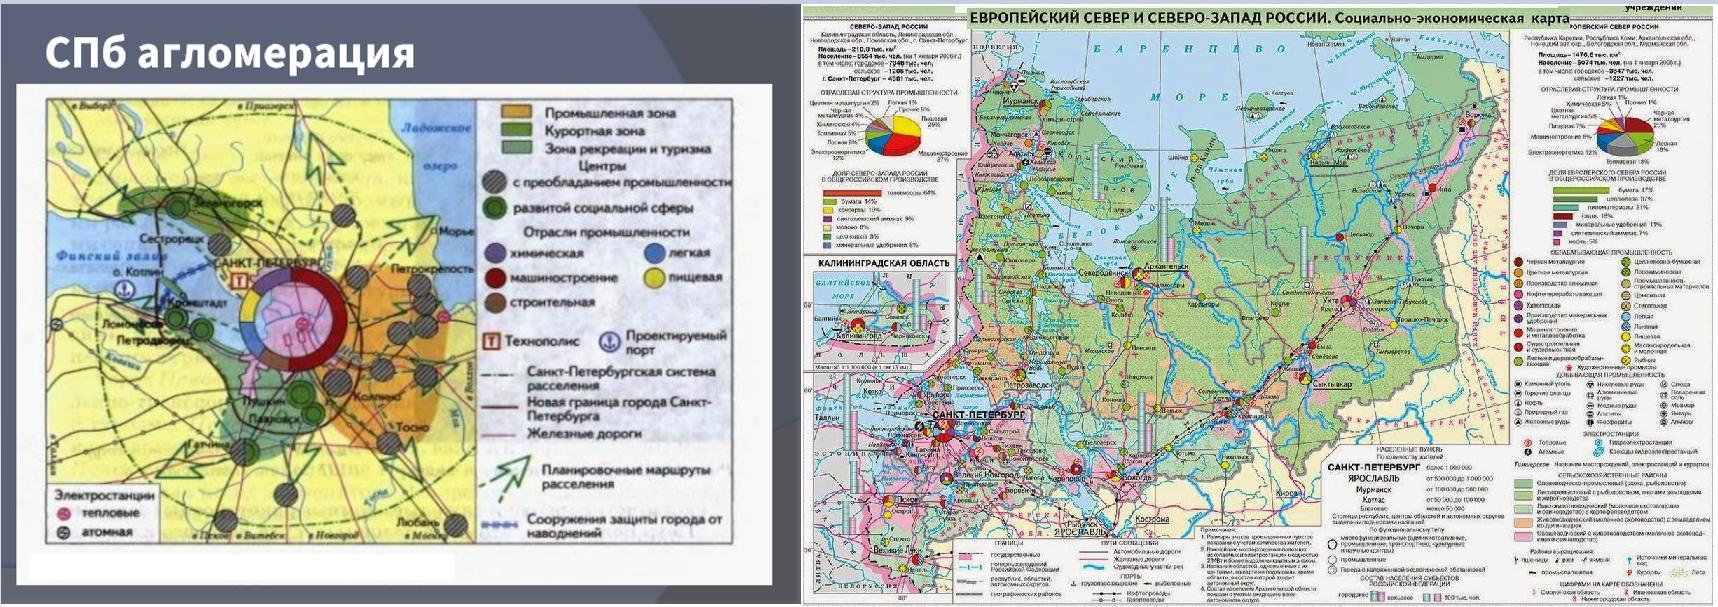 Какие города имеют федеральное значение. Европейский Север России экономическая карта. Атлас 9 класс география Европейский Север и Северо-Запад России.